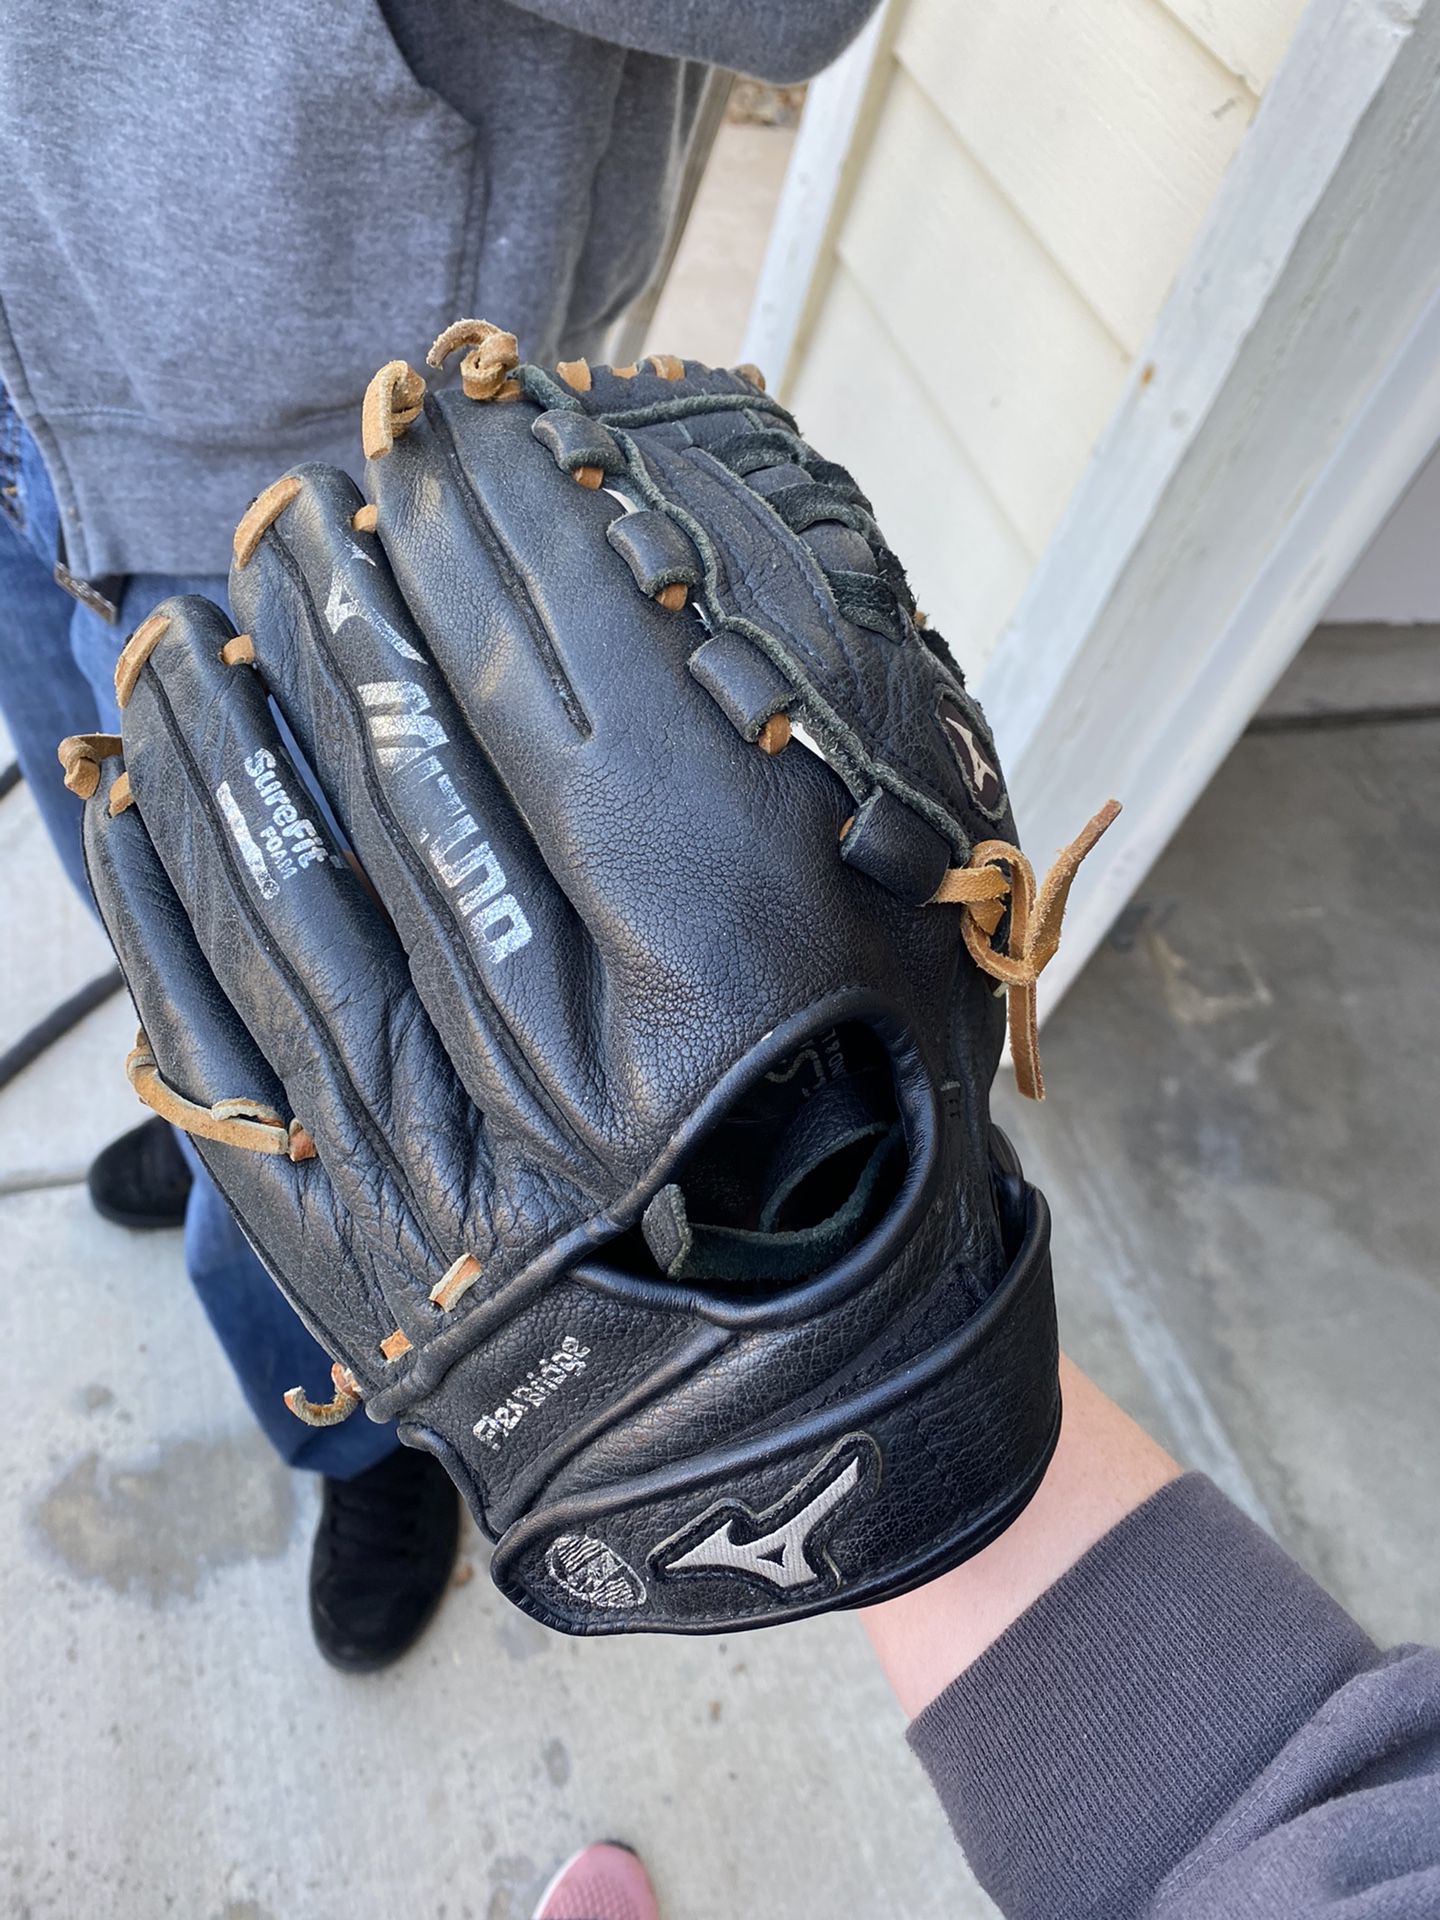 Baseball kids glove